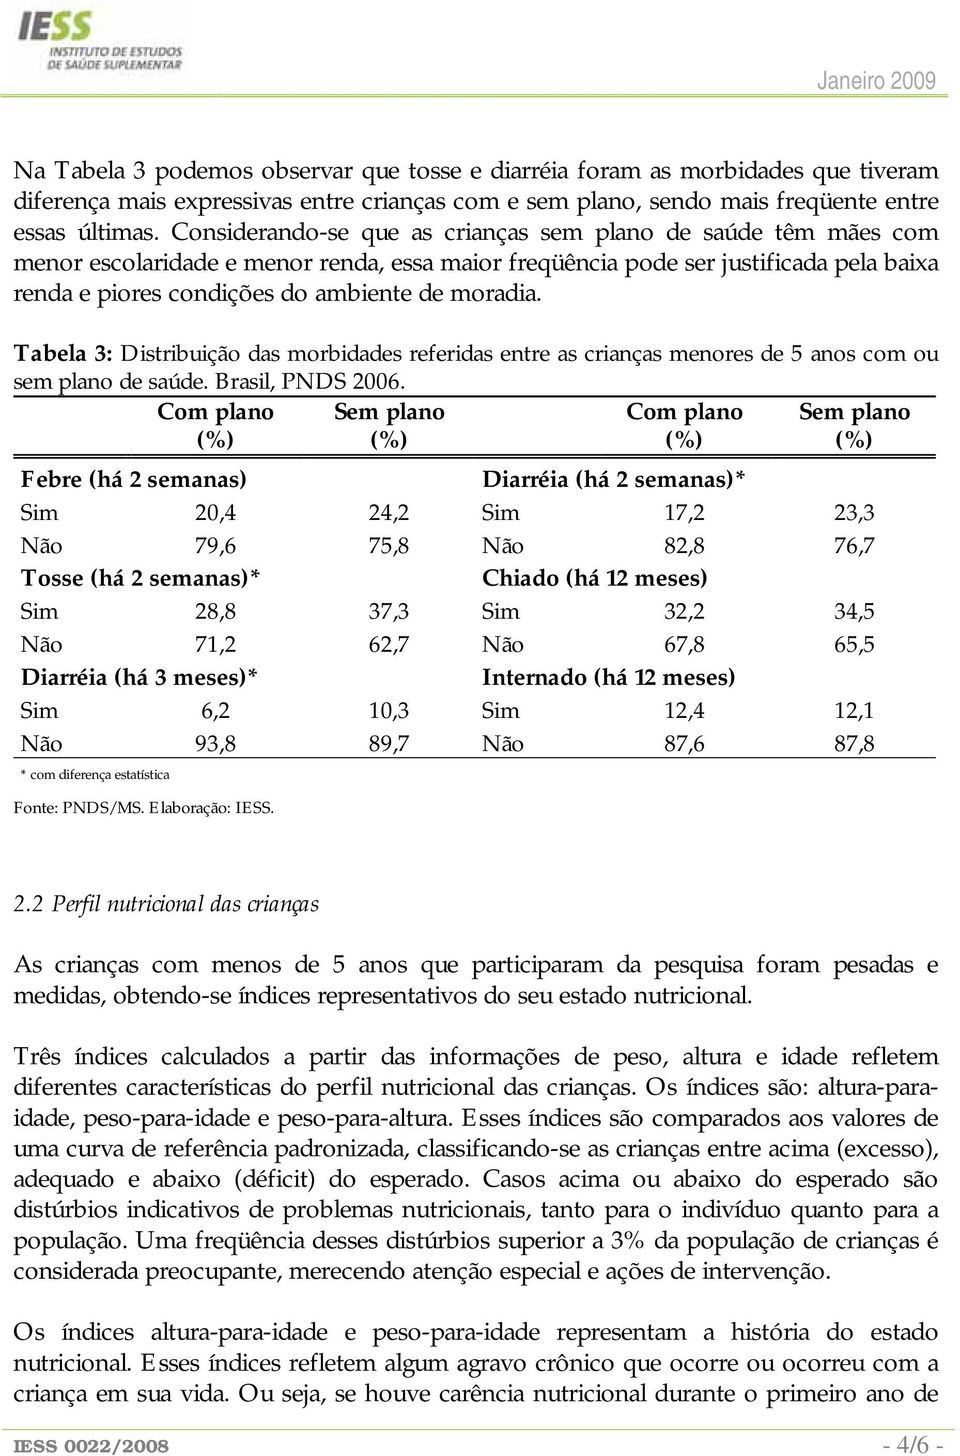 Tabela 3: Distribuição das morbidades referidas entre as crianças menores de 5 anos com ou sem plano de saúde. Brasil, PNDS 2006.